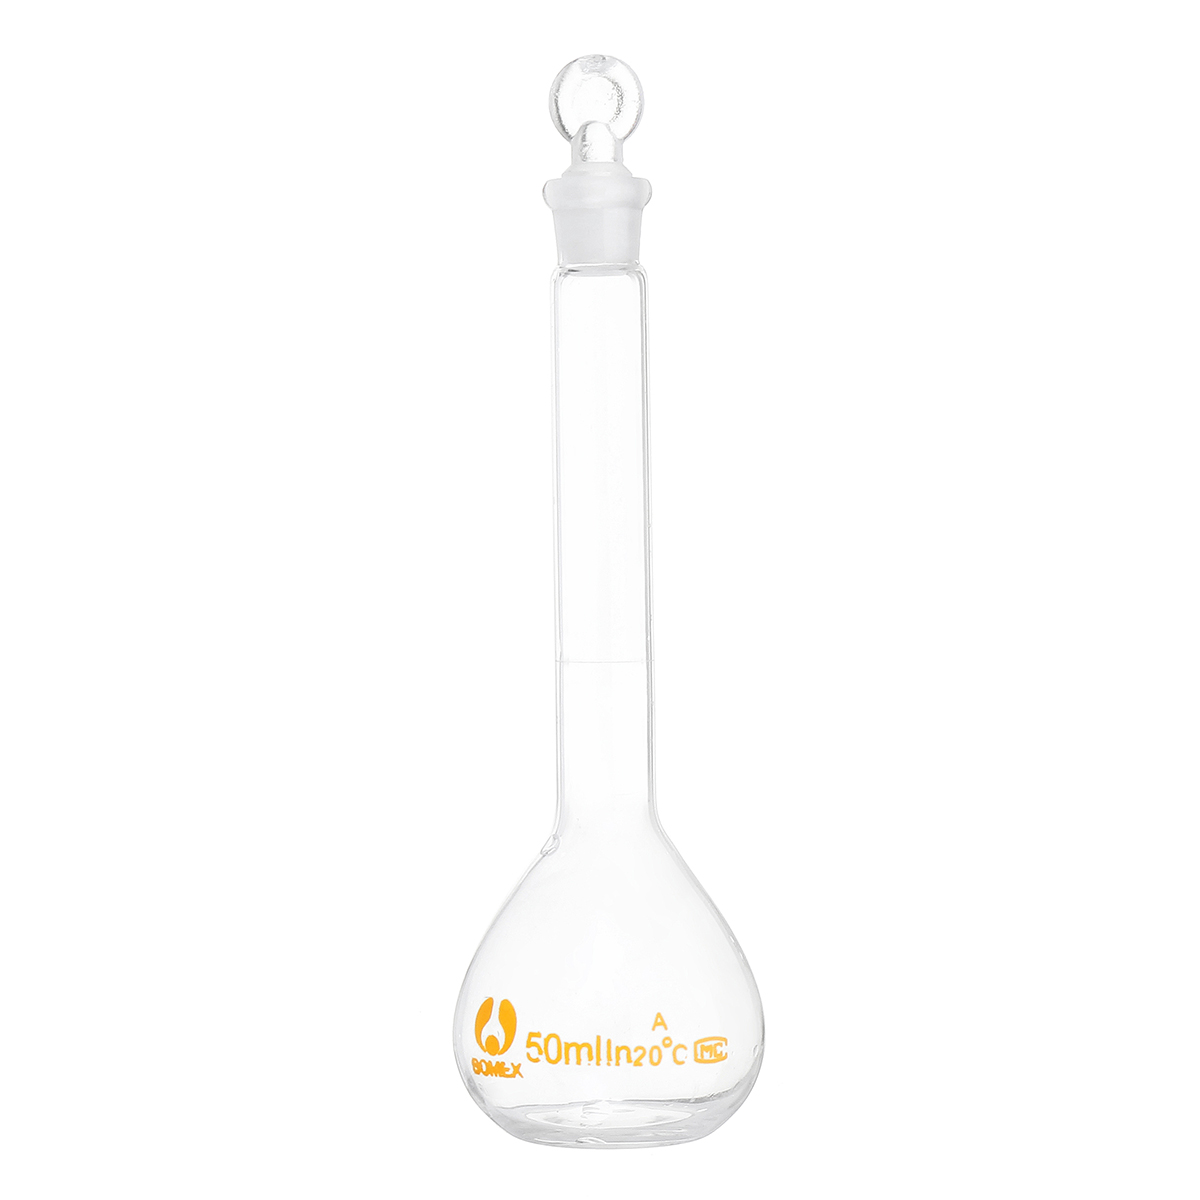 50mL-Clear-Glass-Volumetric-Flask-w-Glass-Stopper-Lab-Chemistry-Glassware-1356426-5